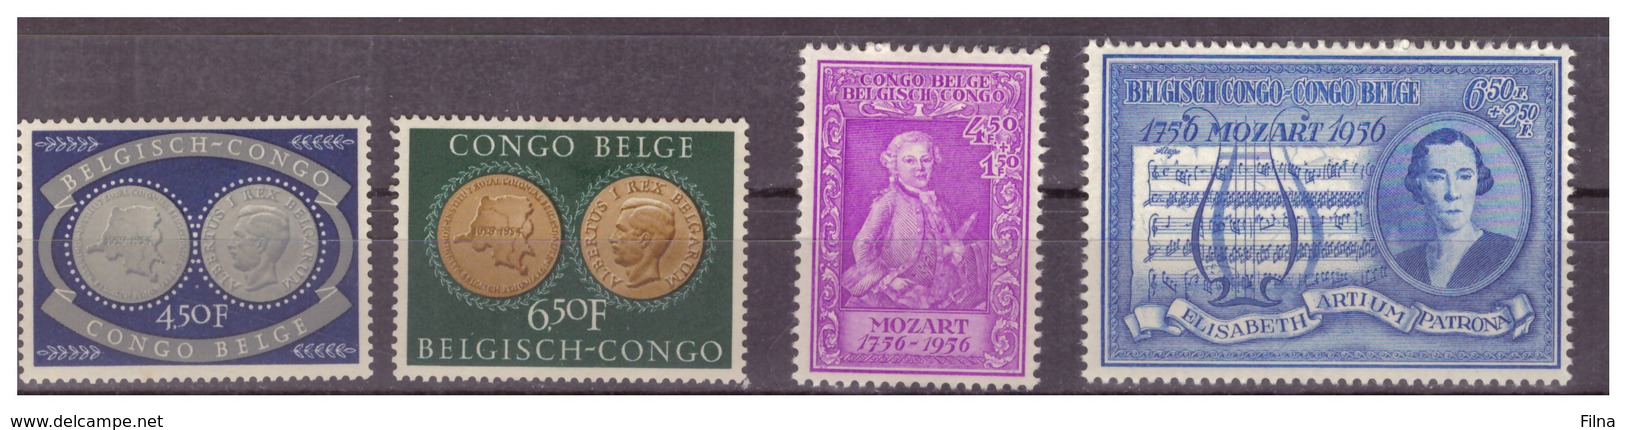 CONGO BELGA - 1954 E 1956 - DUE SERIE COMPLETE. - MH* - Nuovi